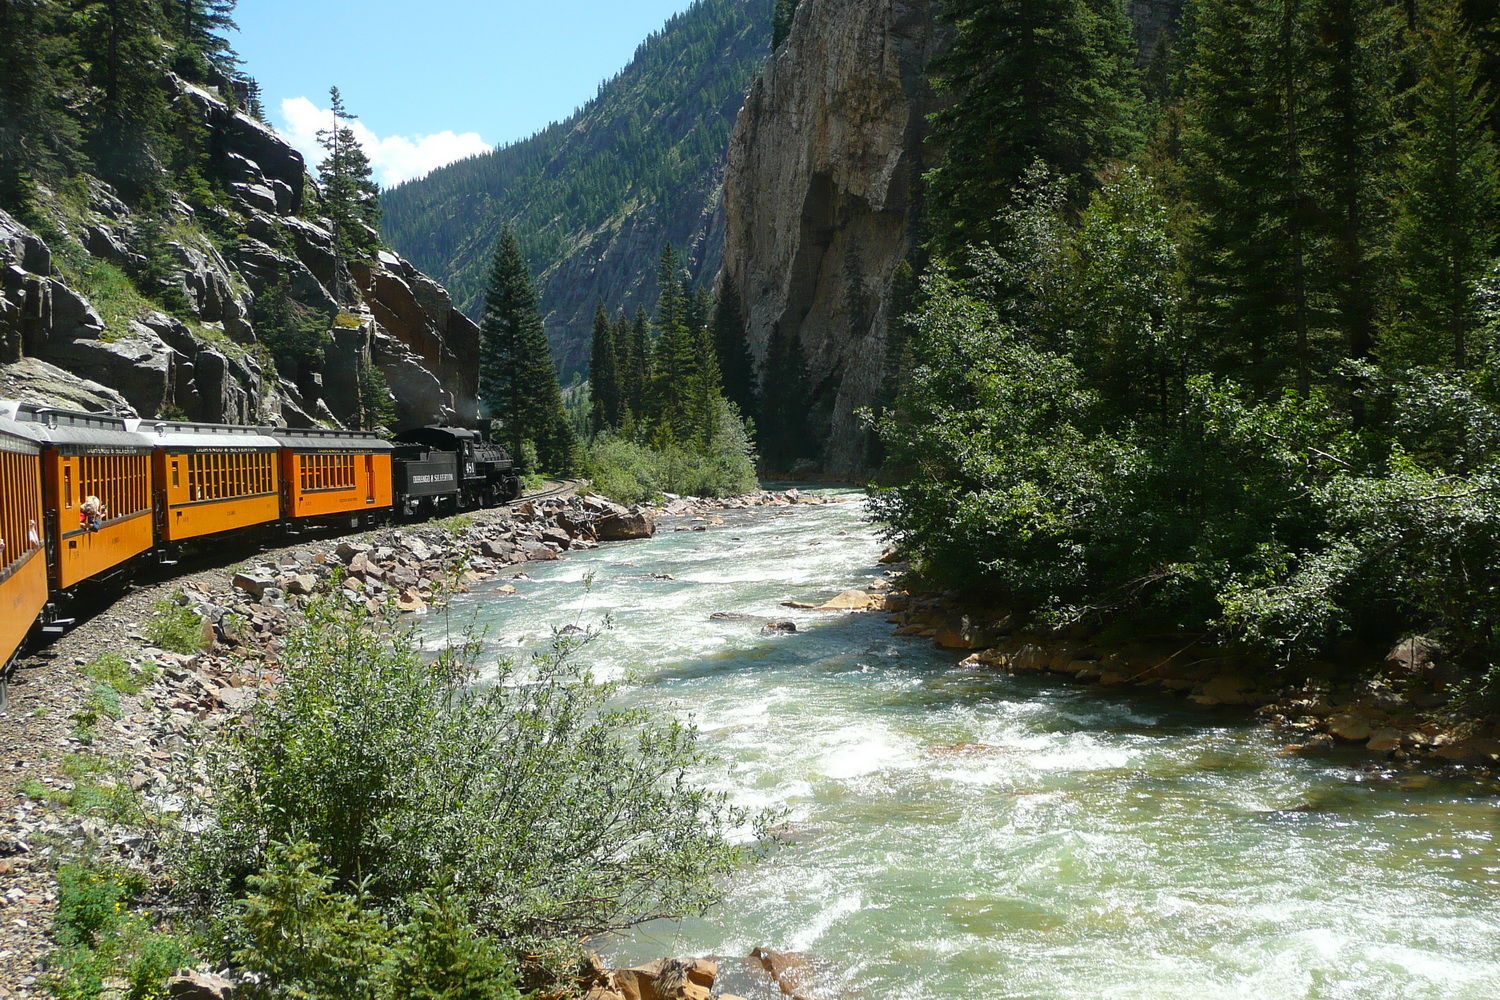 Durango train